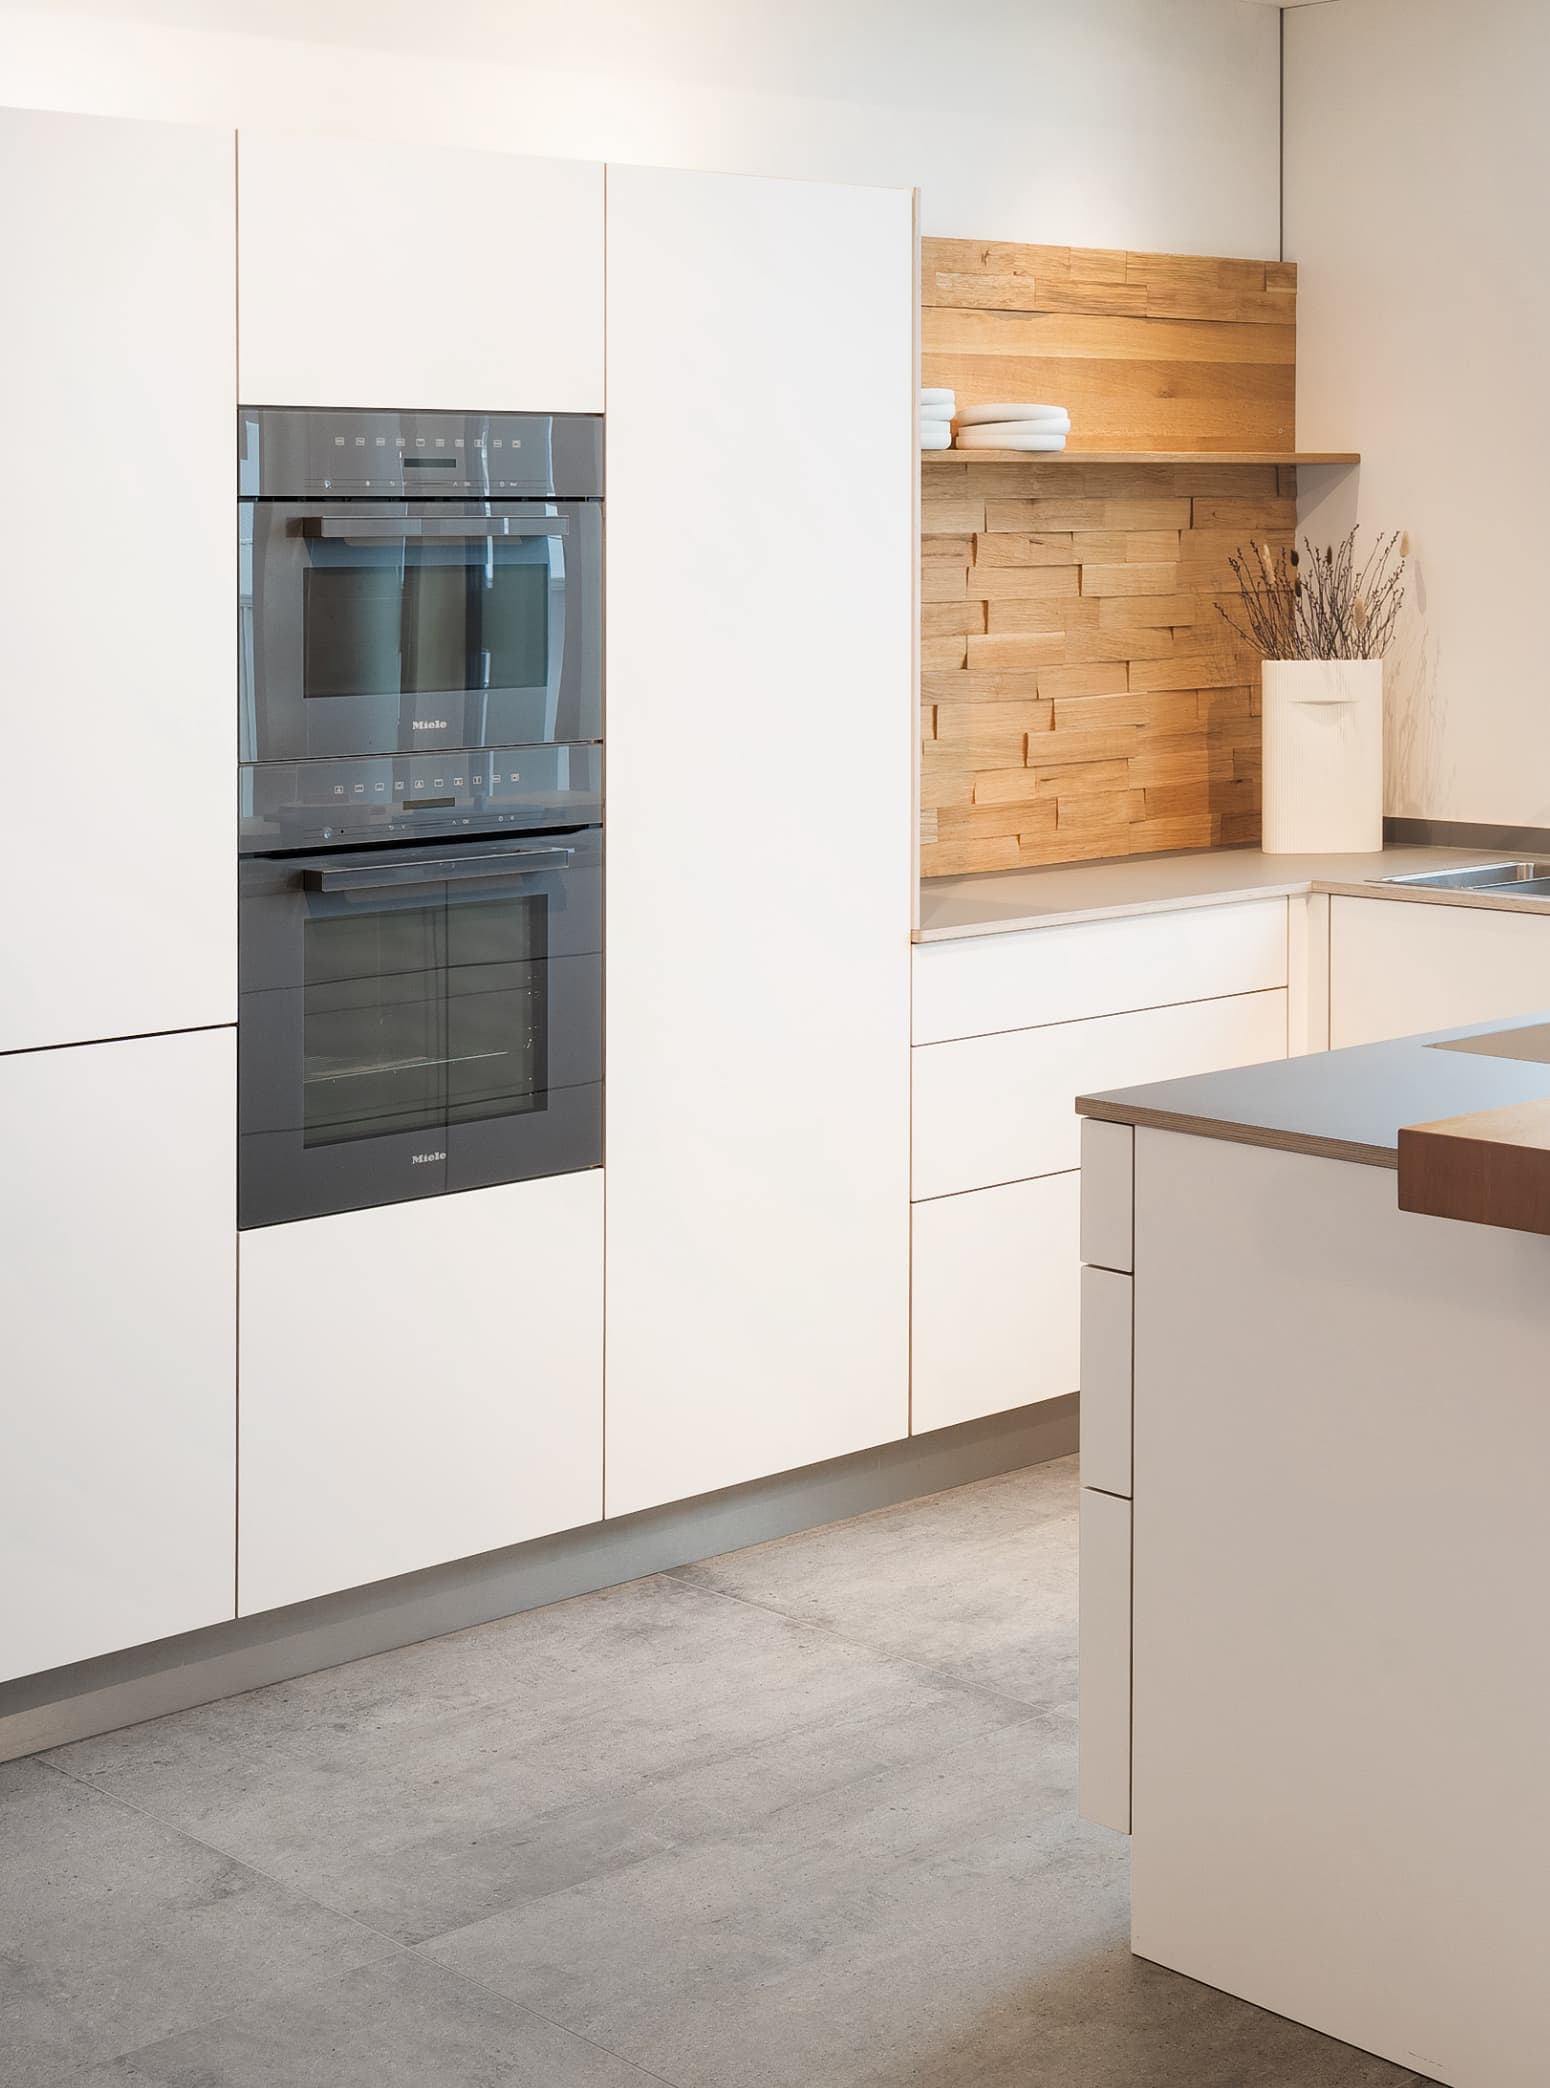 Küche in Weiß und Grau mit Spaltholz-Rückwand